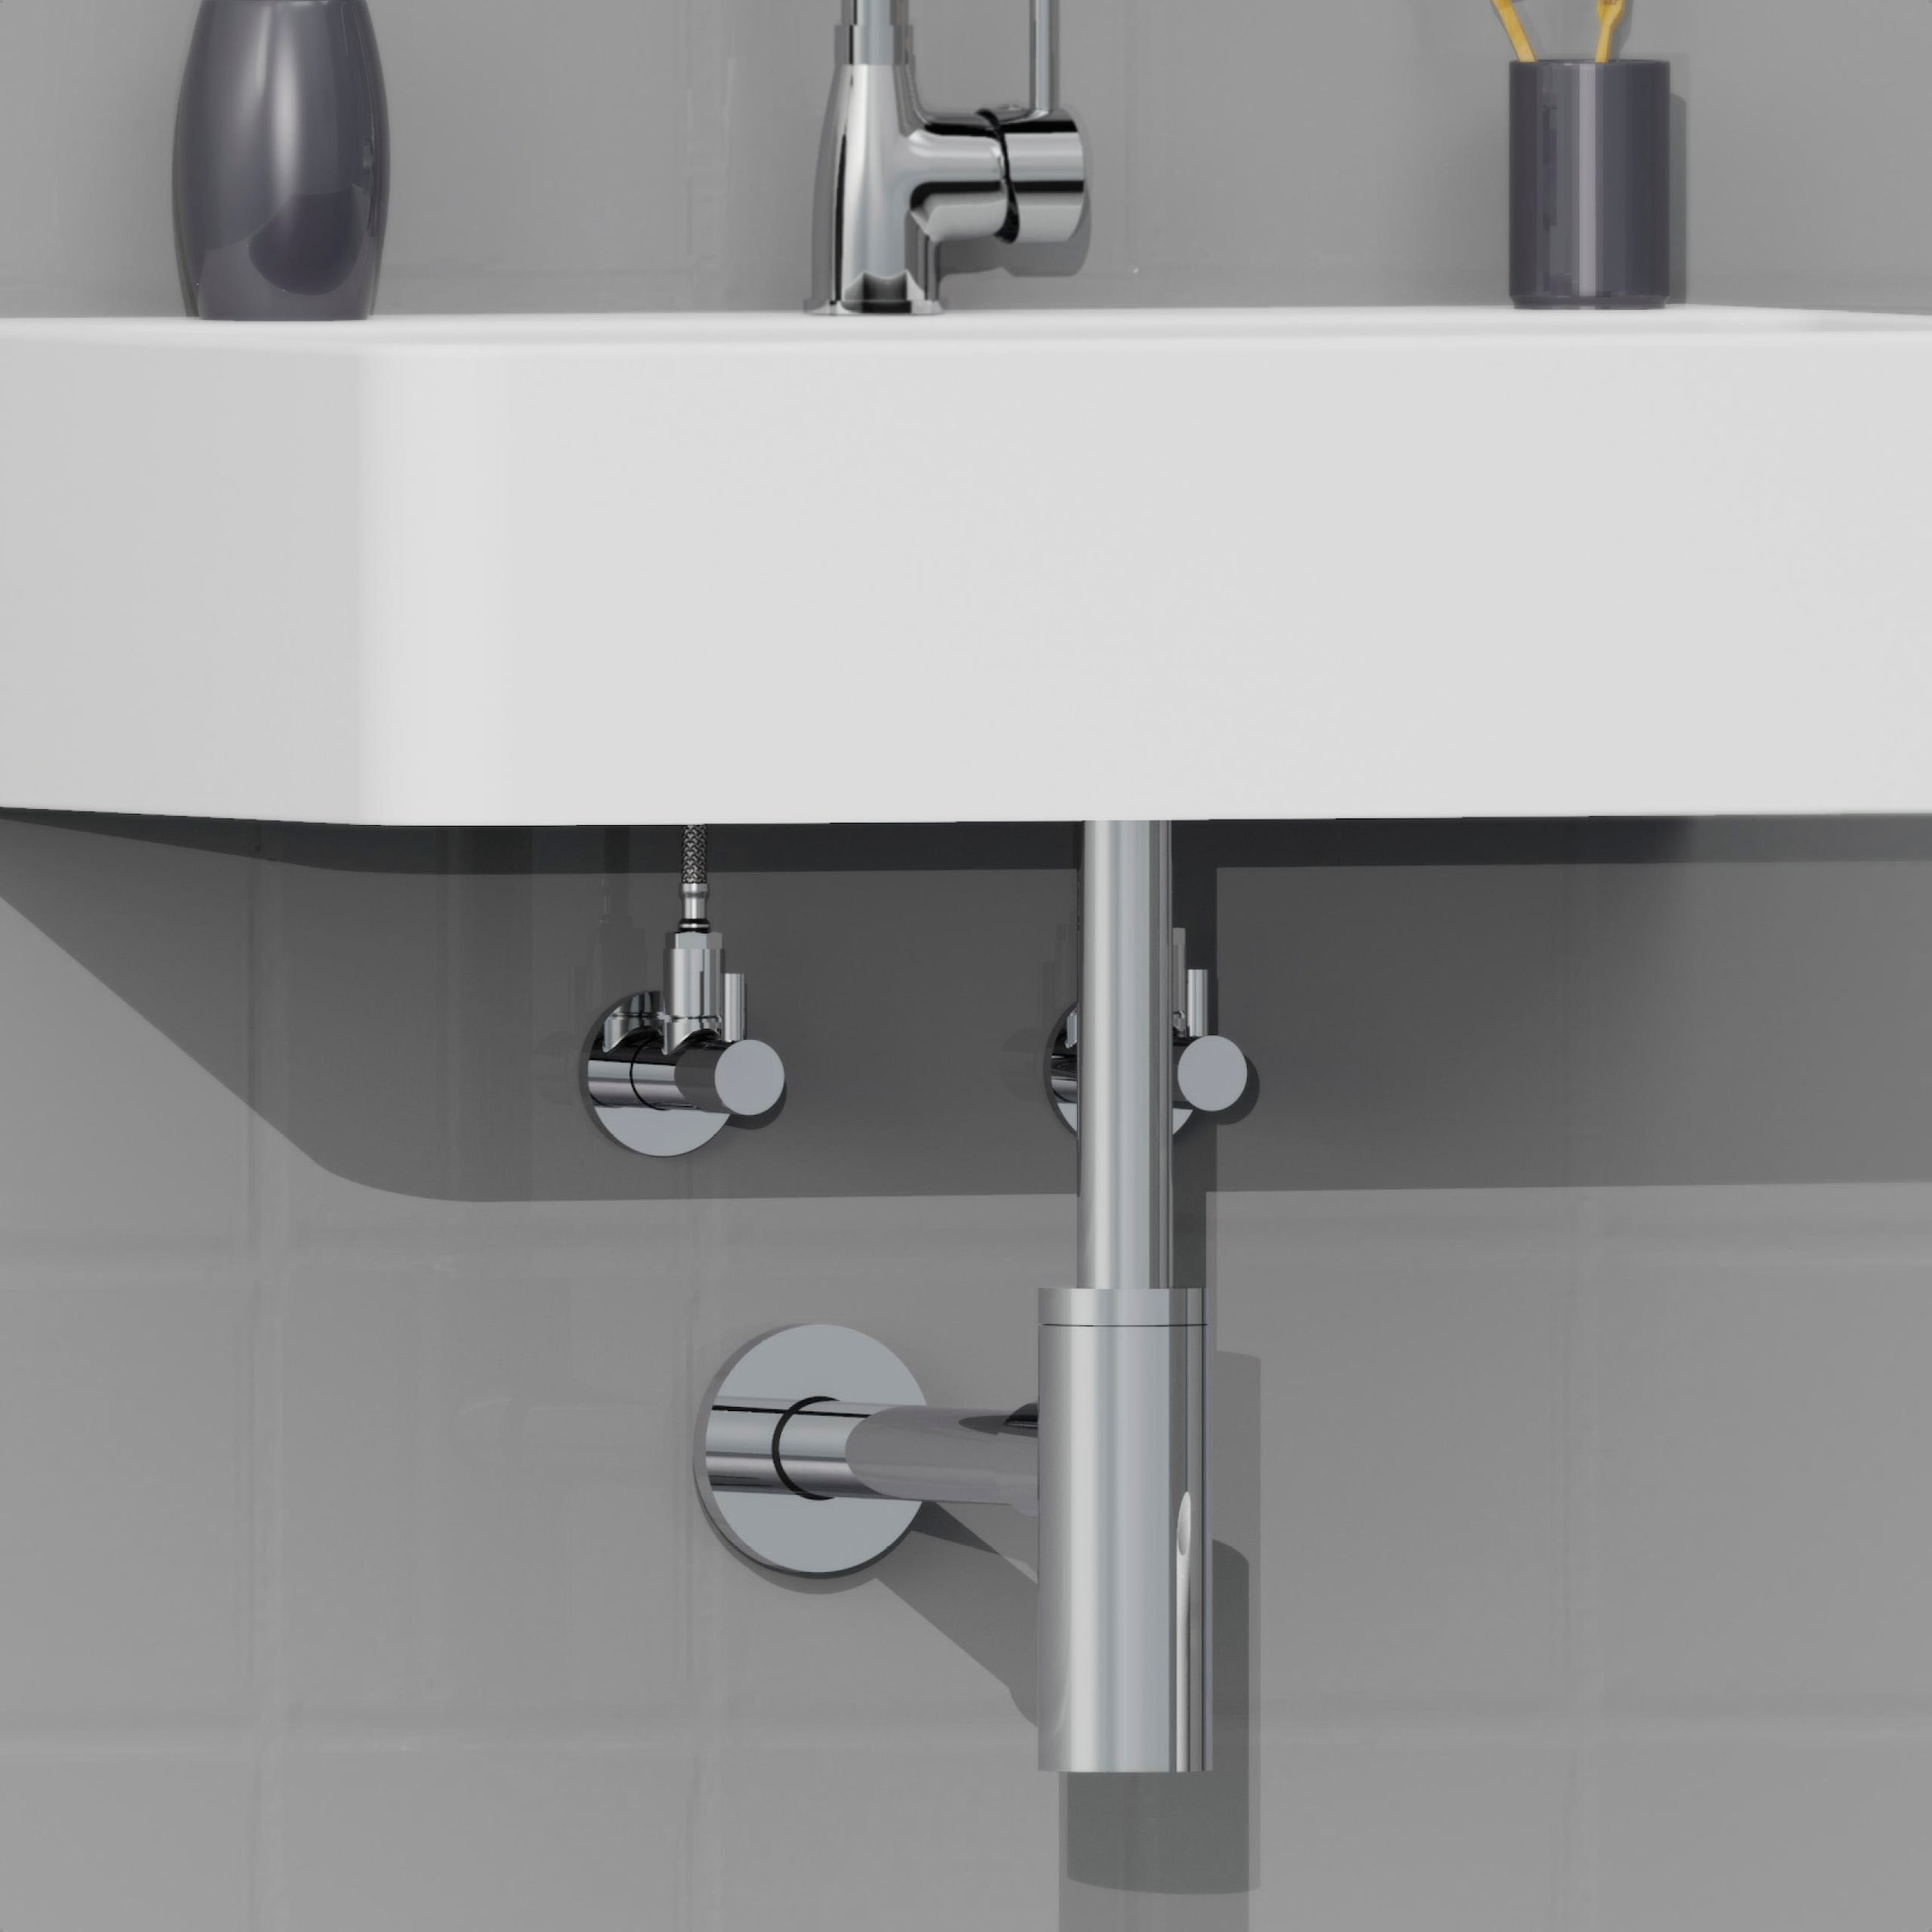 Kirchhoff Siphon »Design Flaschensiphon inkl. Reinigungsöffnung«, Röhrengeruchsverschluss für Waschbecken/Waschtische